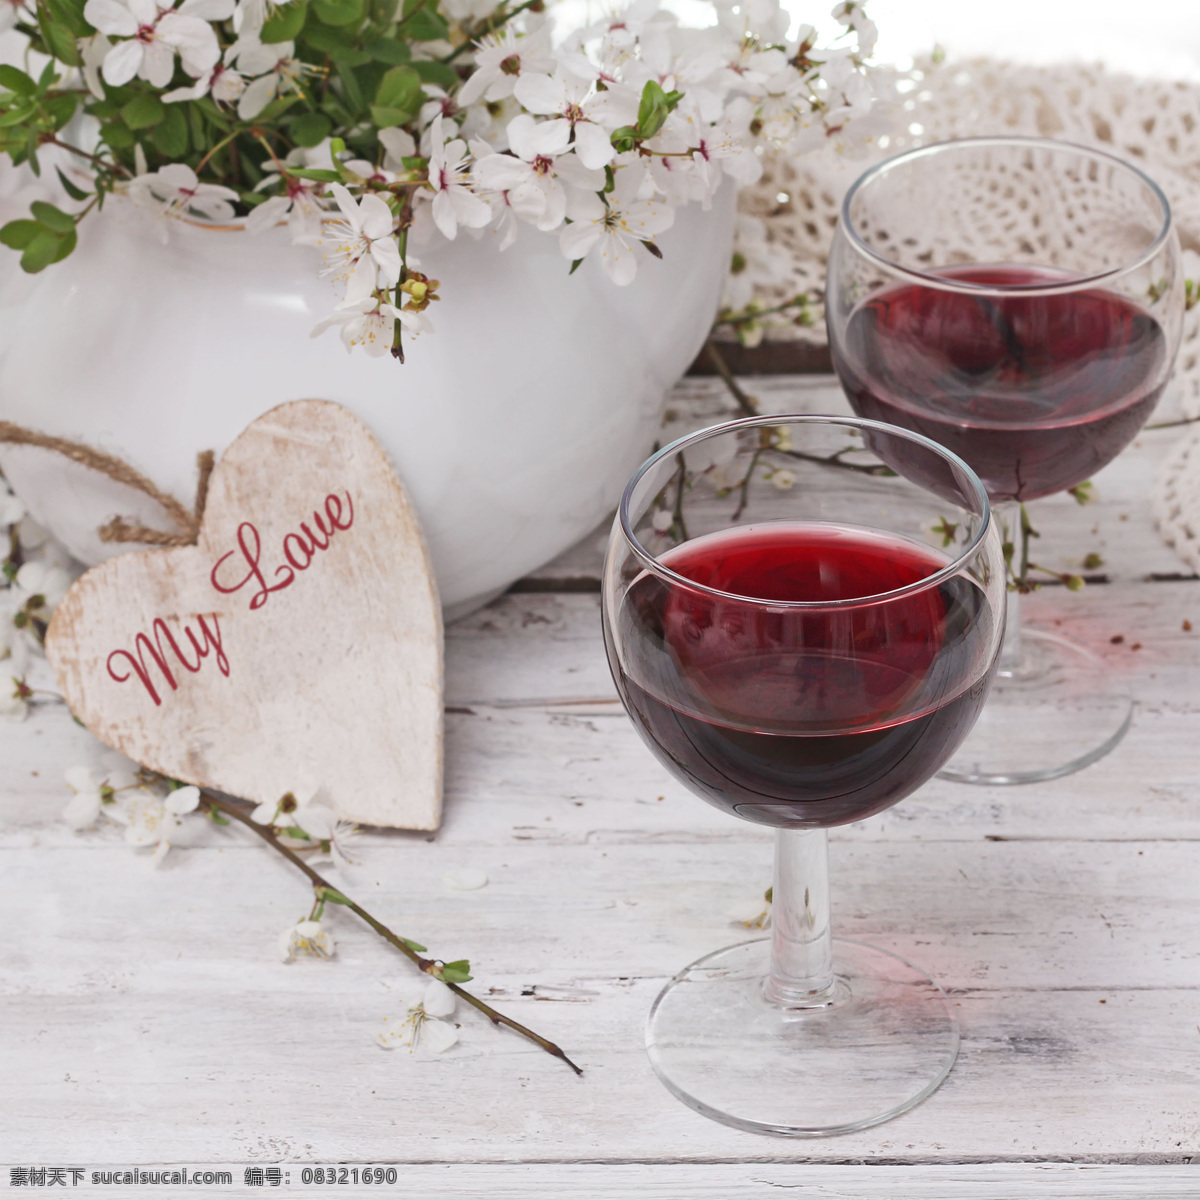 红酒图片素材 红酒 美酒 葡萄酒 酒杯 高脚杯 酒类图片 餐饮美食